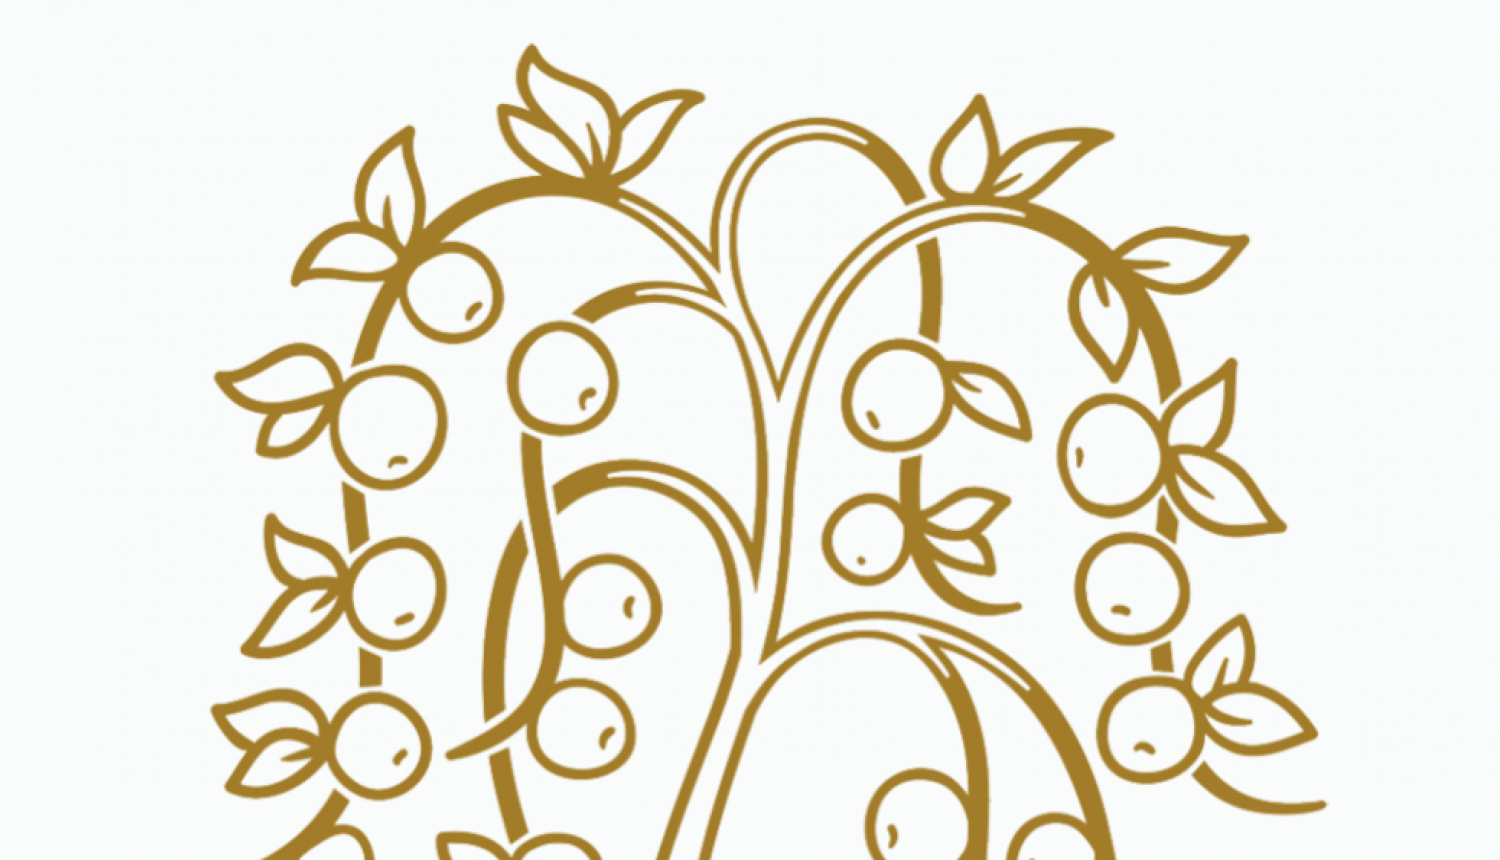 Grāmatu mākslas konkursa "Zelta ābele" vizuālā identitāte